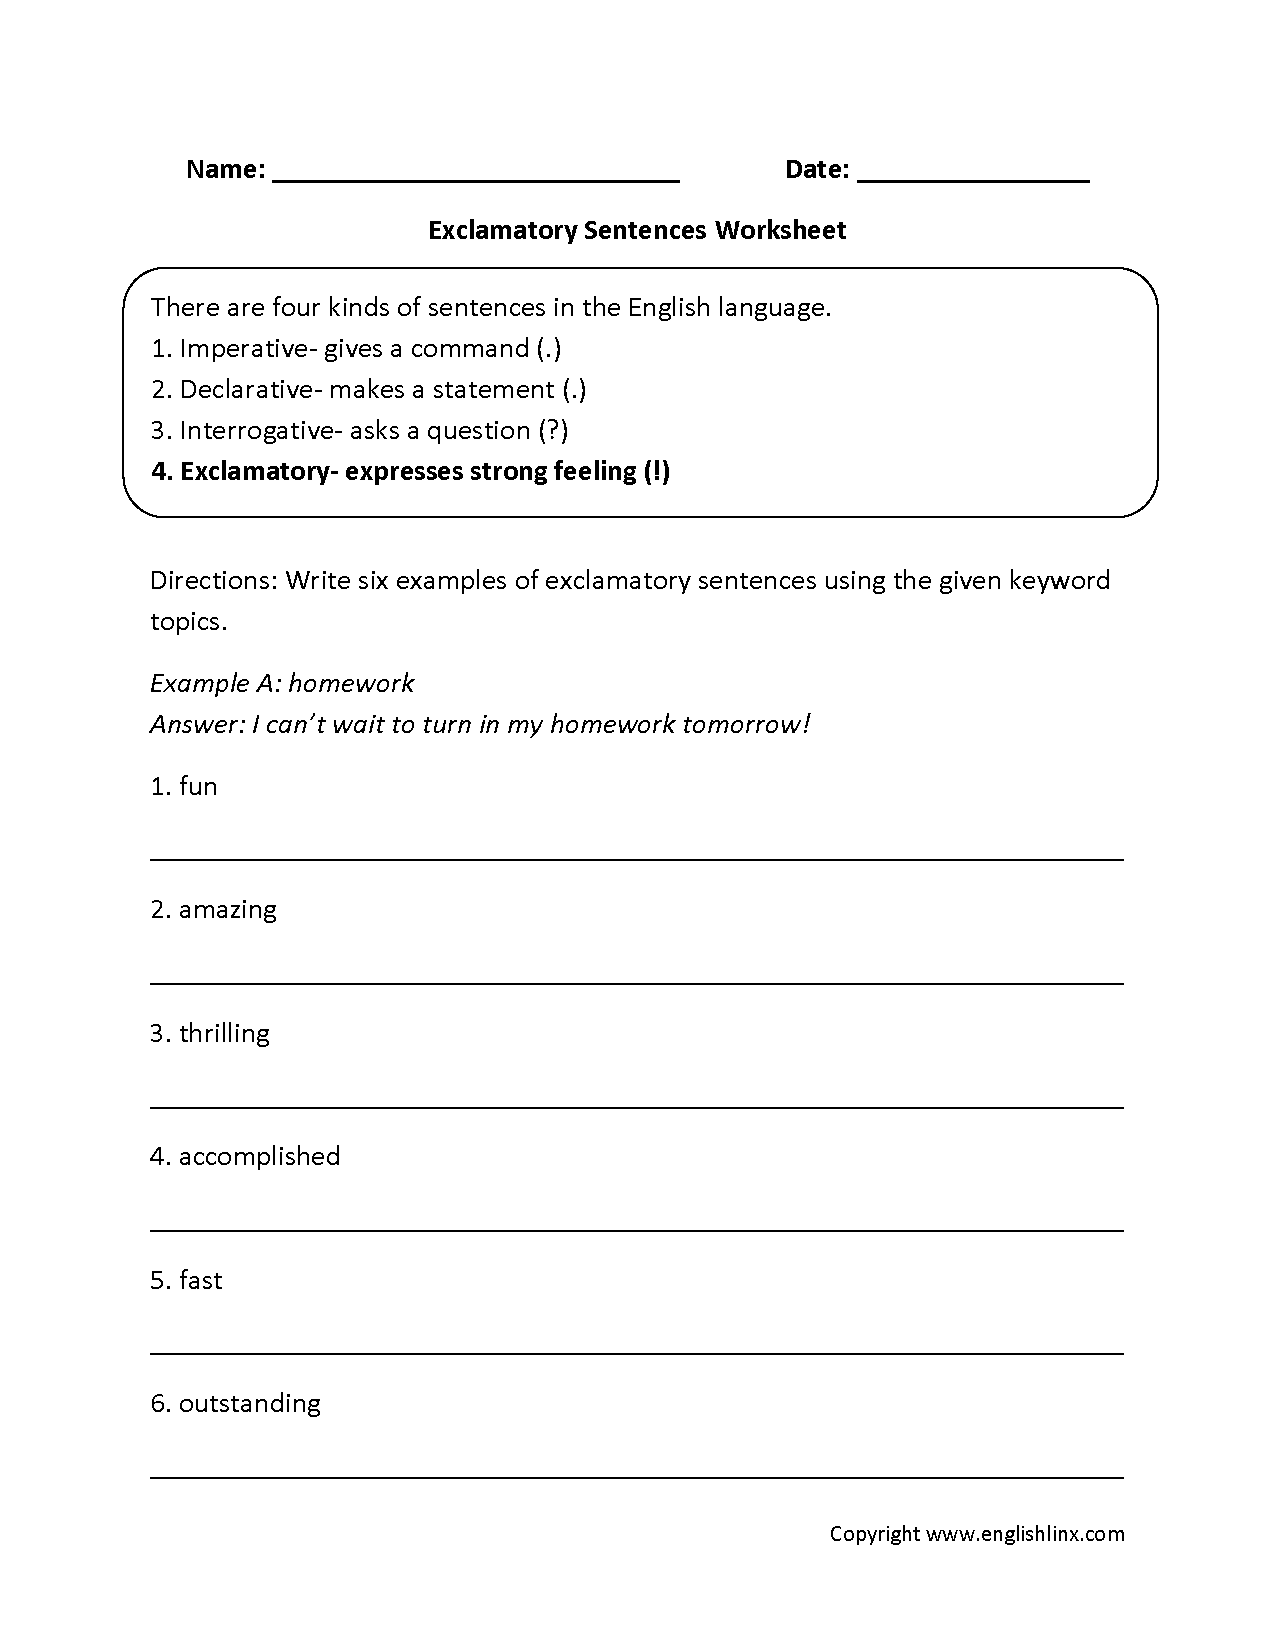 Sentences Worksheets Types Of Sentences Worksheets